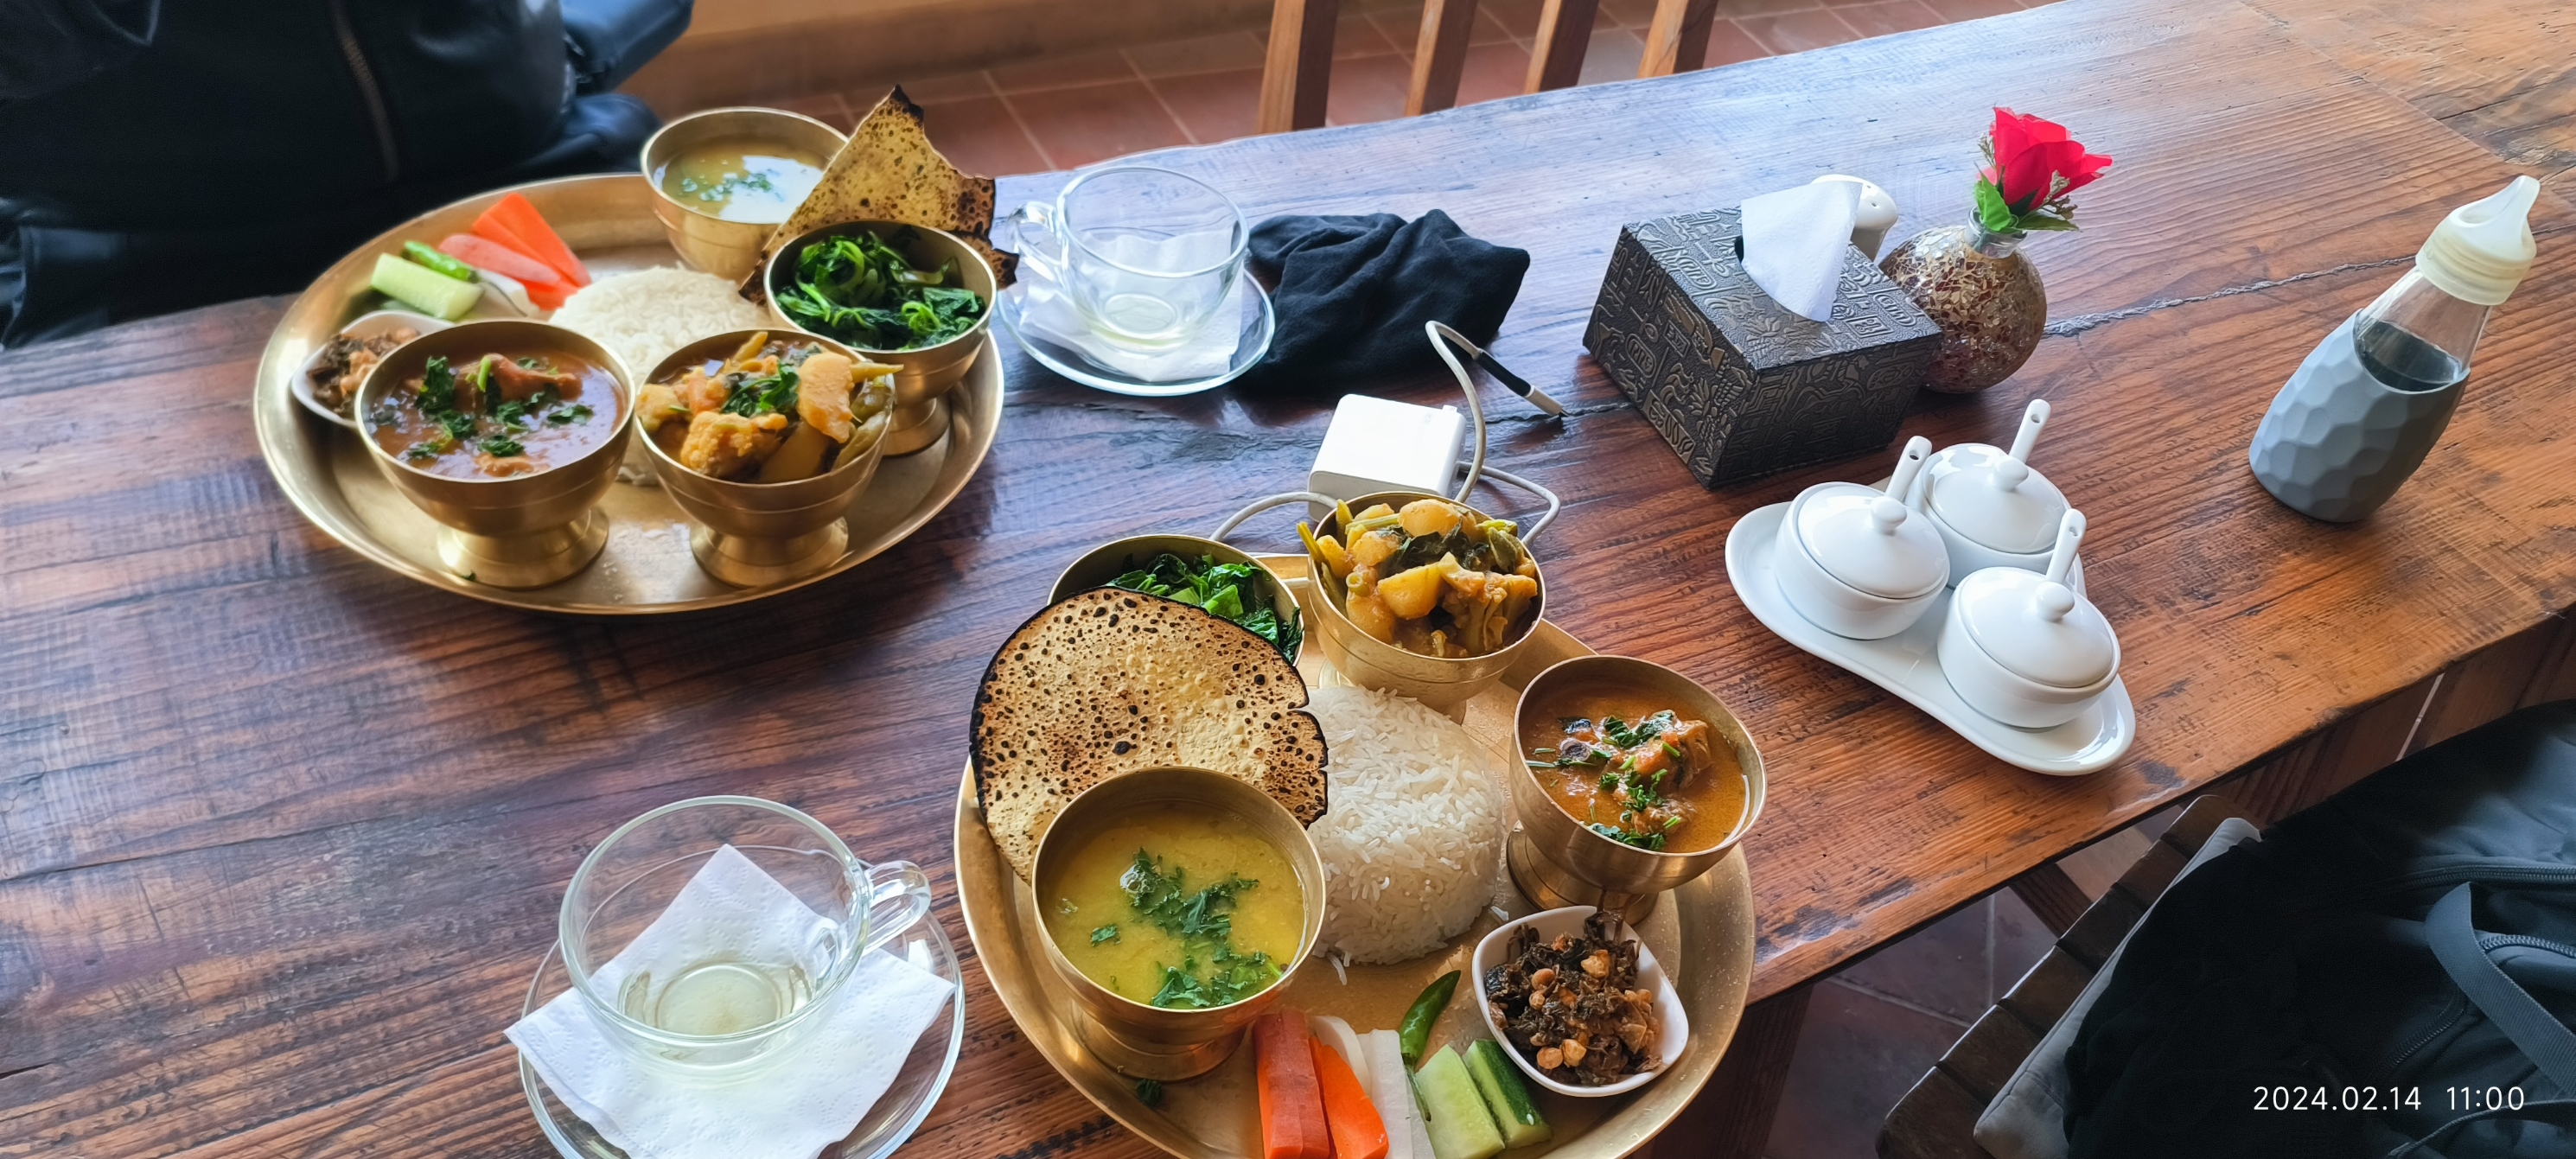 尼泊尔的博卡拉的一个泰式餐厅